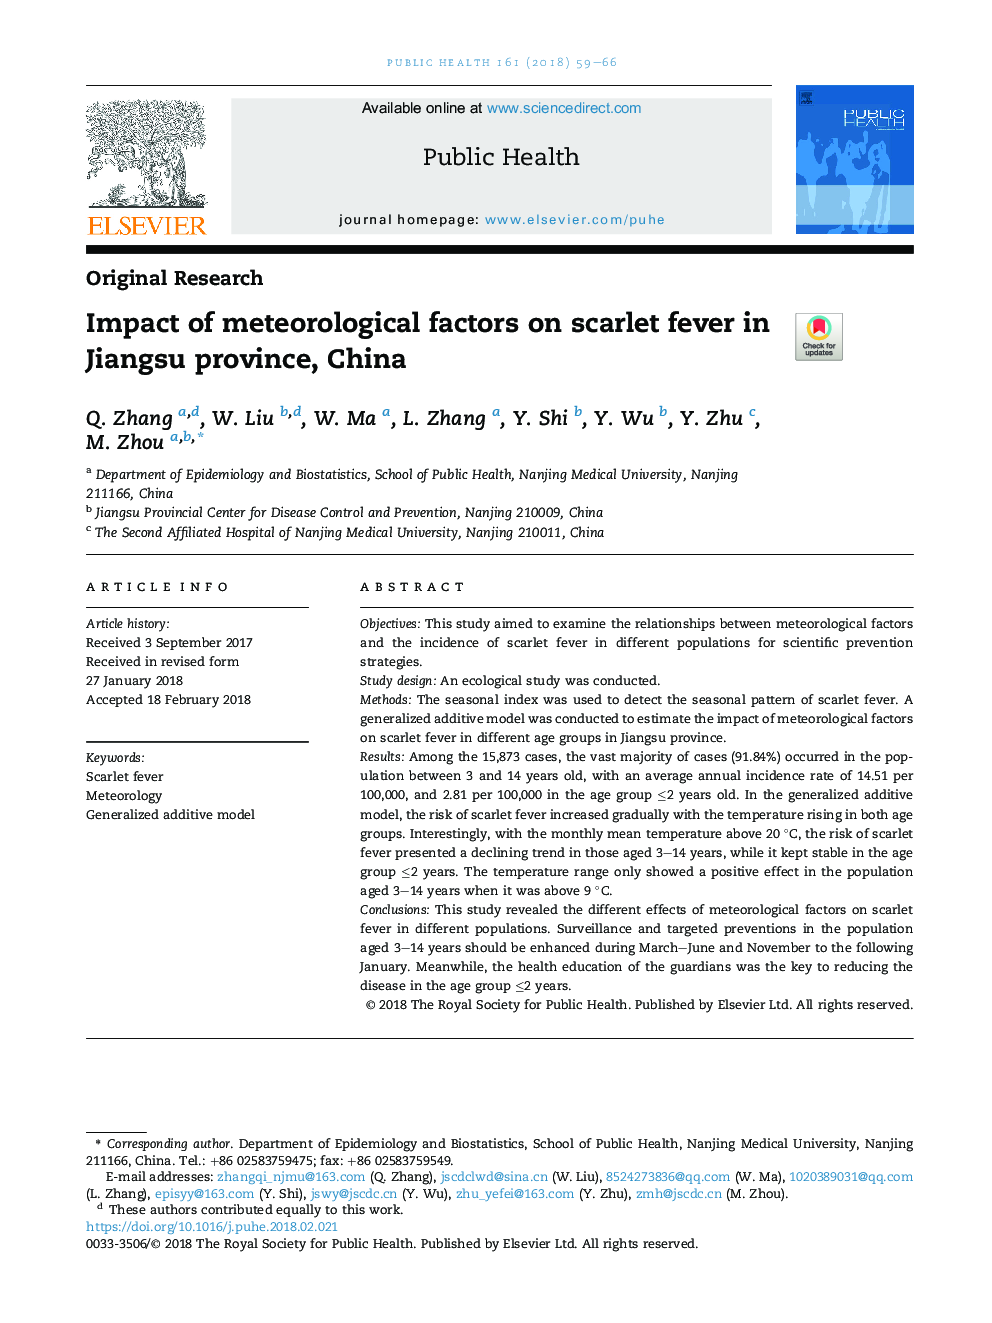 تاثیر عوامل هواشناختی بر تب زرد در استان جیانگسو، چین 